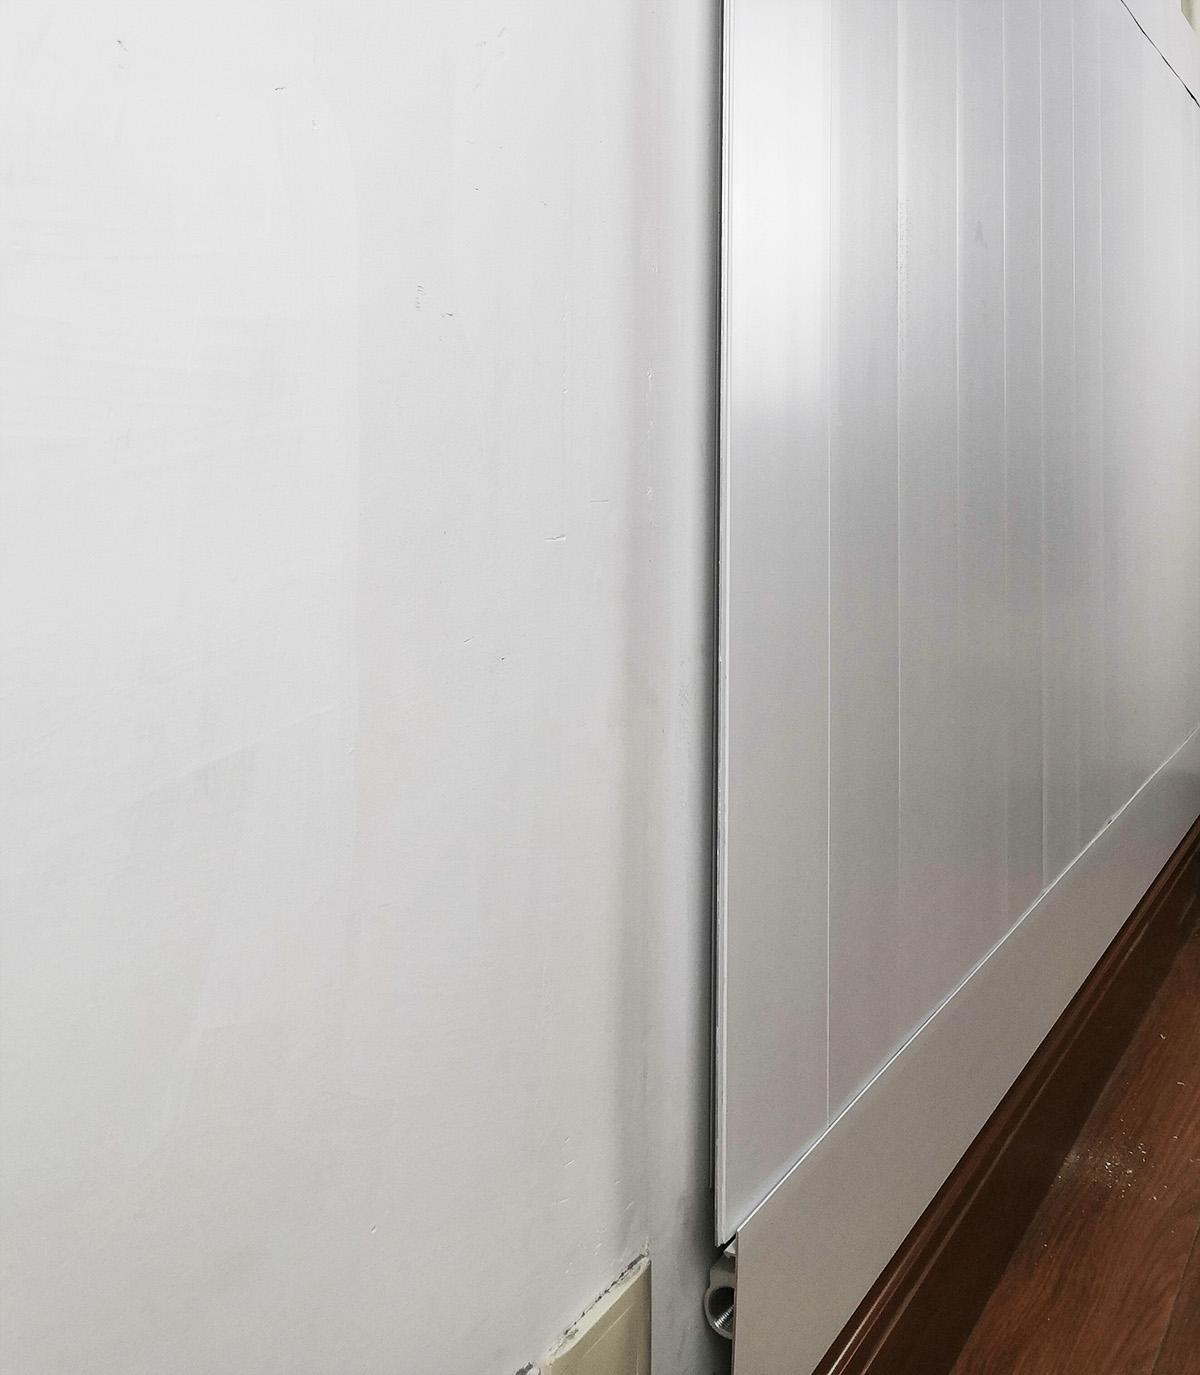 墙暖新品薄型墙围式暖气片结构设计科学经久耐用新型暖气片